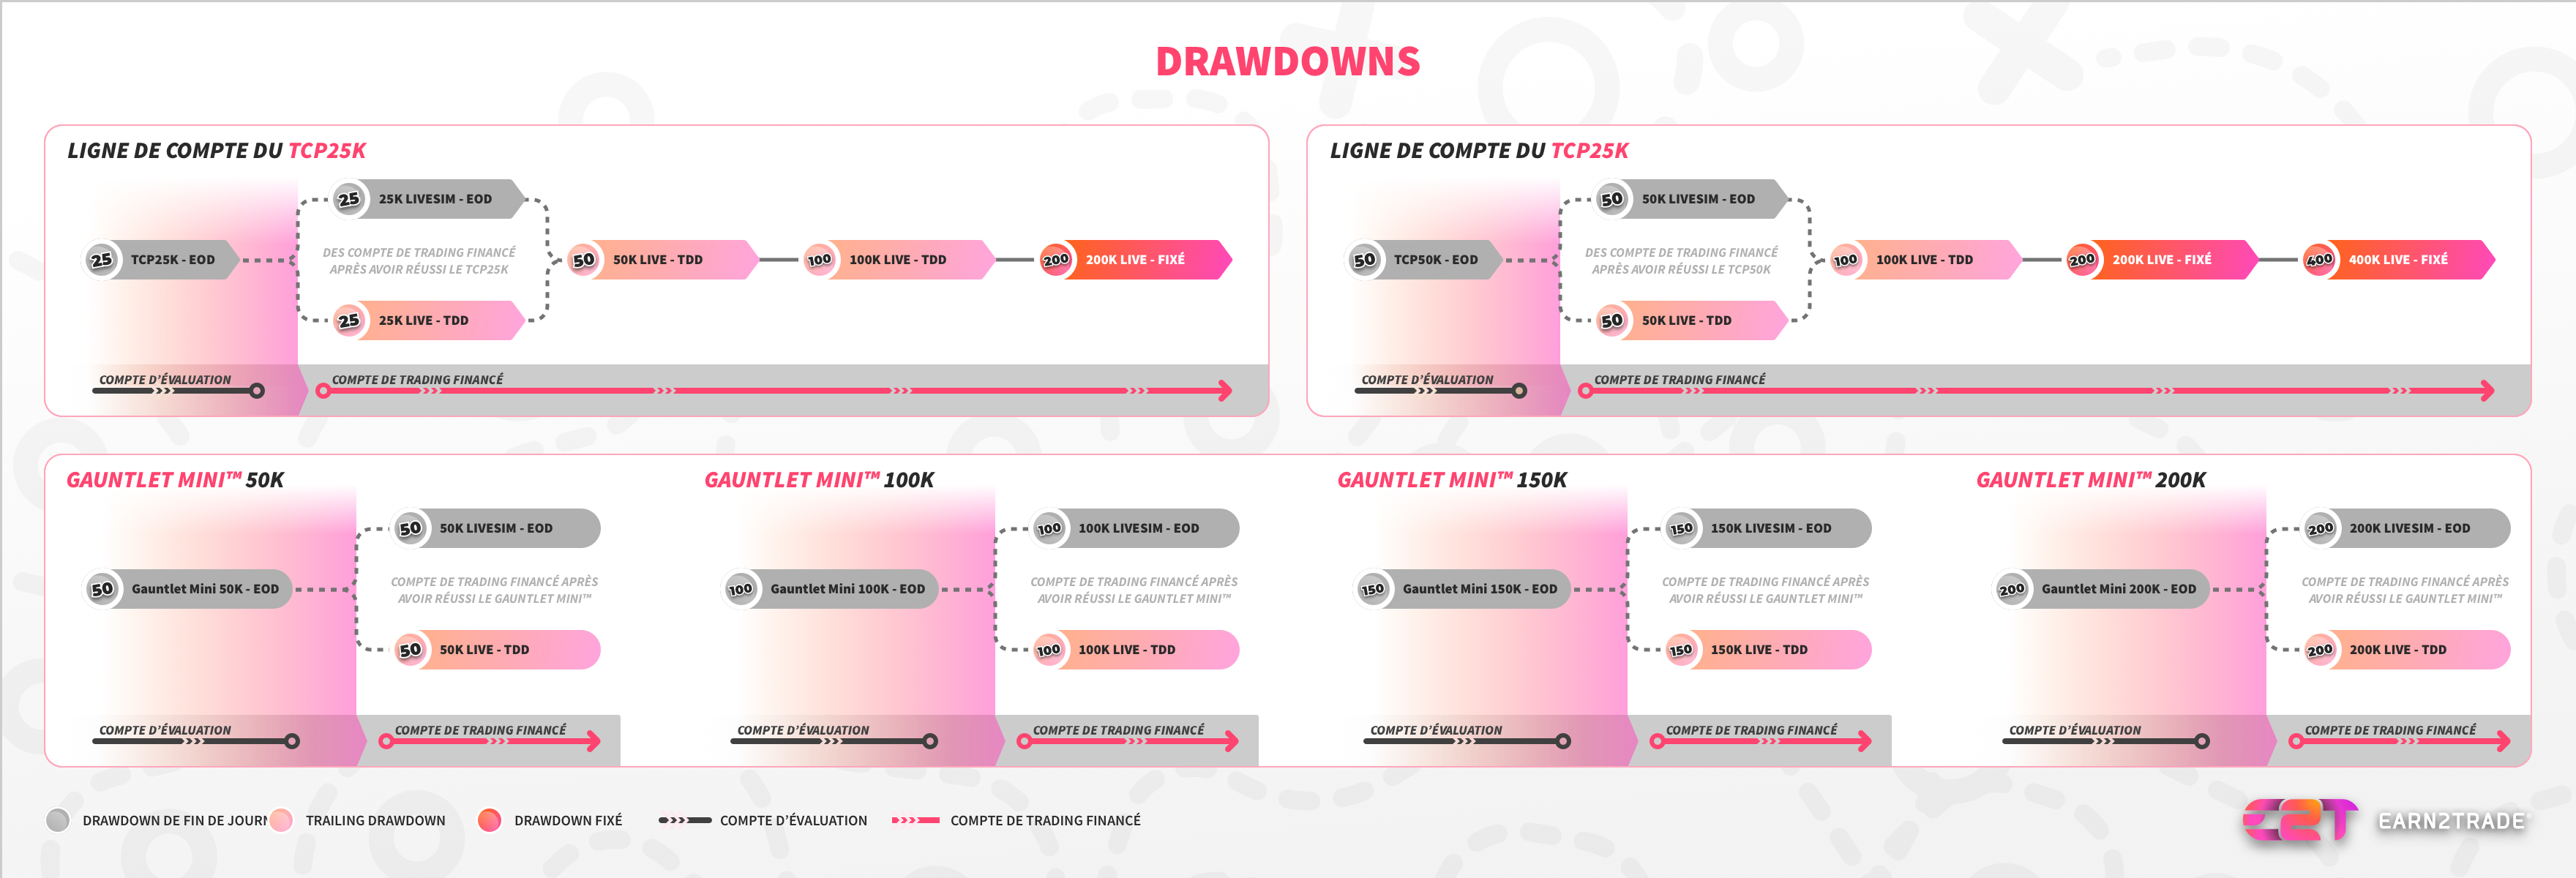 Quels sont les différents types de drawdown ?